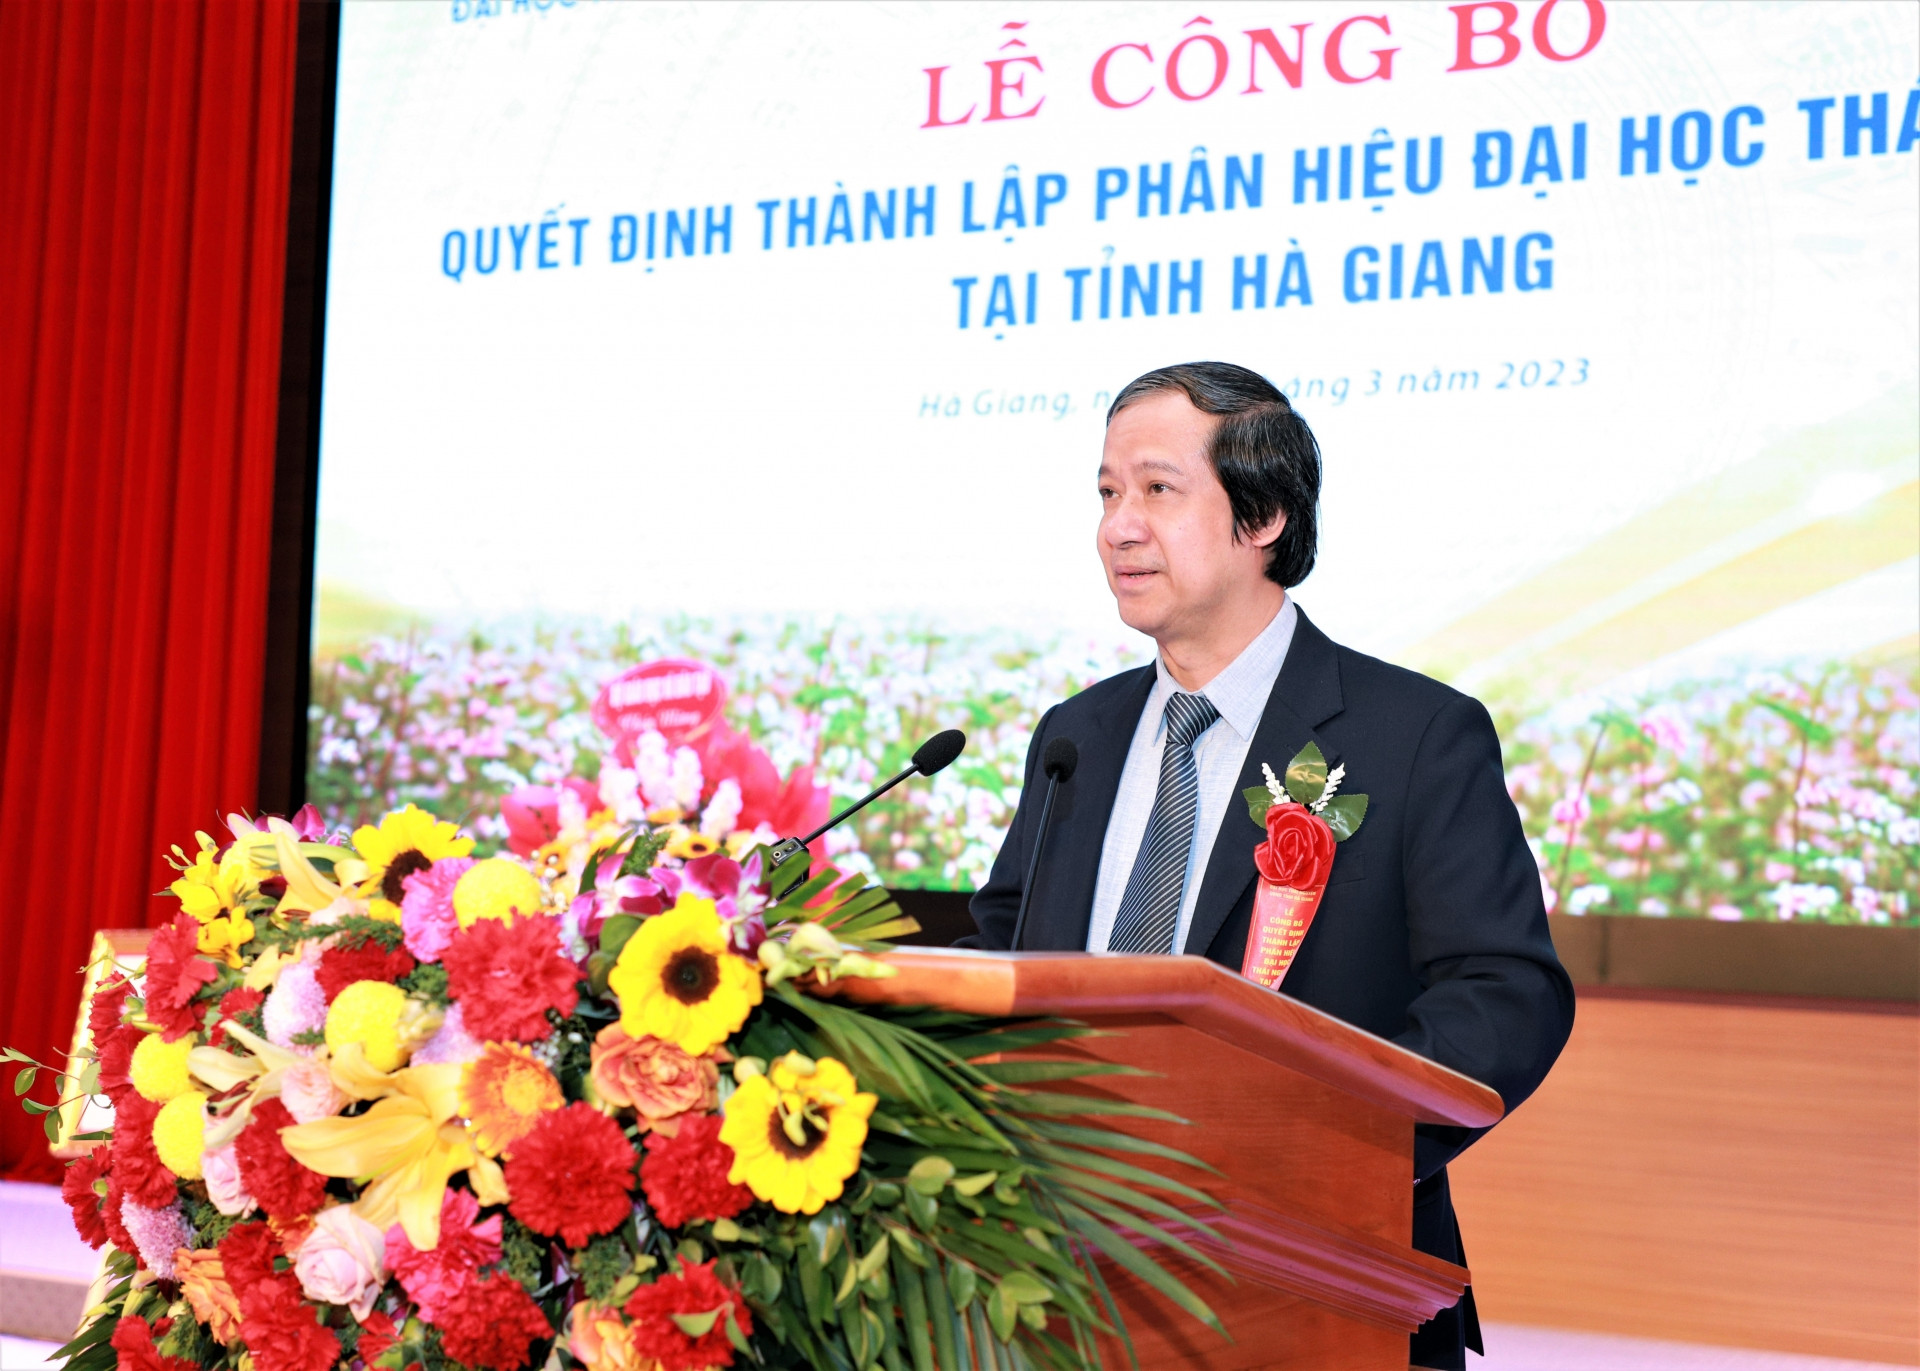 Thành lập Phân hiệu Đại học Thái Nguyên tại Hà Giang